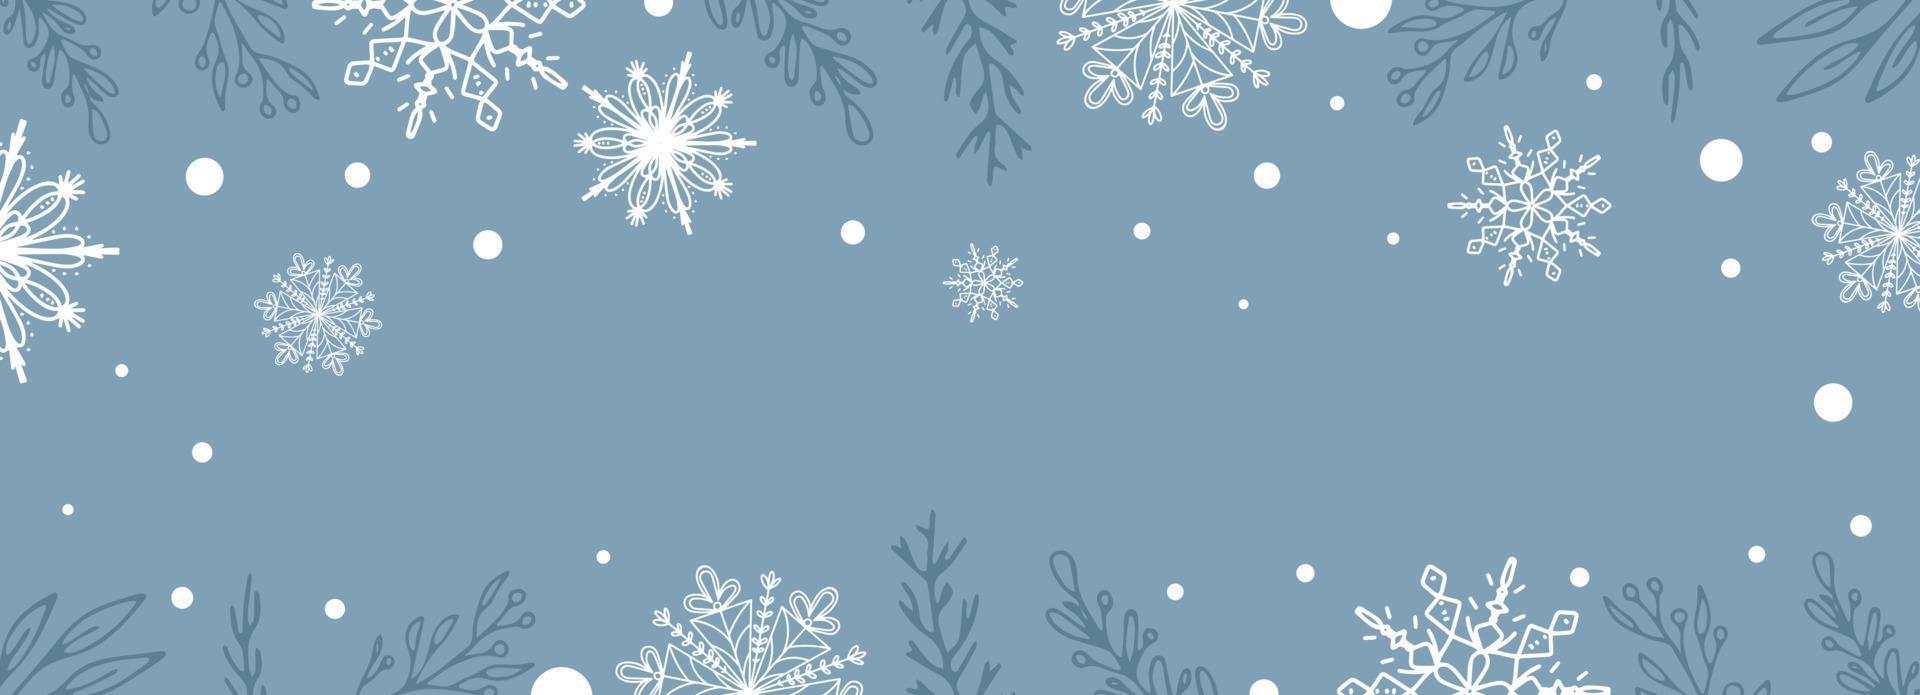 skön uppsättning av vit botanisk element jul träd, bär för vinter- design. samling av jul ny år element. frysta silhuetter av kristall kvistar på en blå bakgrund. vektor